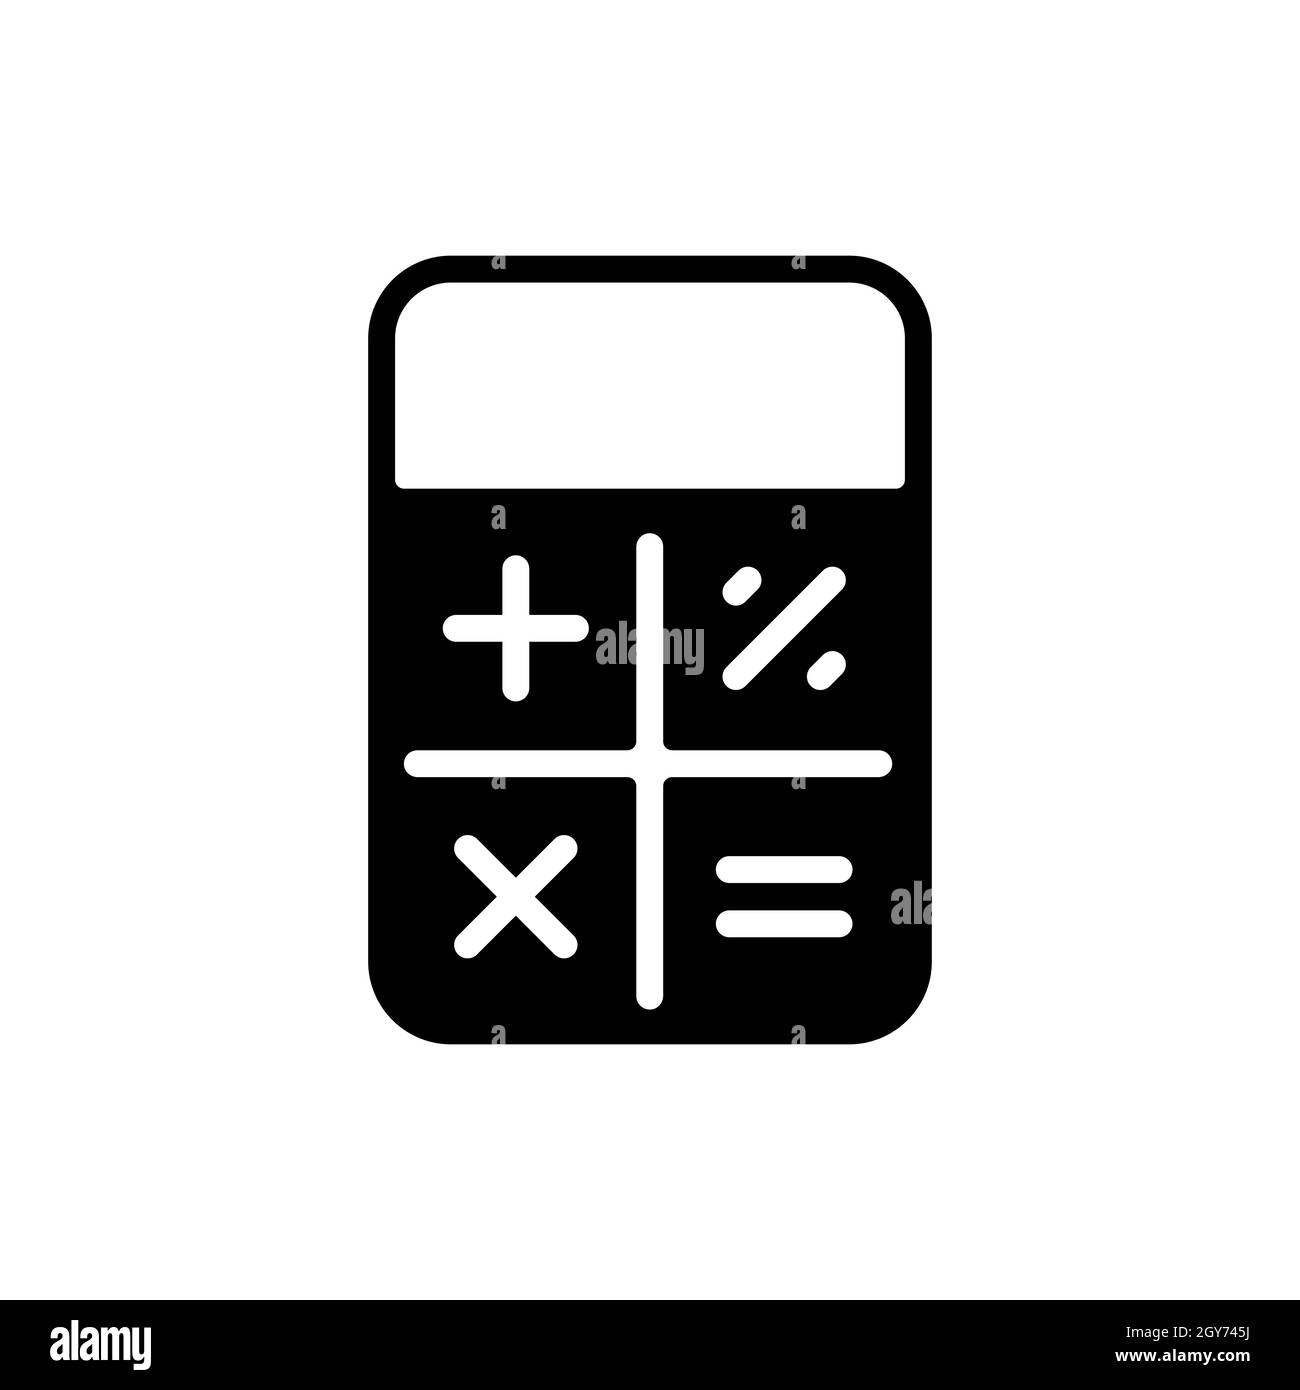 Calculator icon vector Banque d'images noir et blanc - Alamy